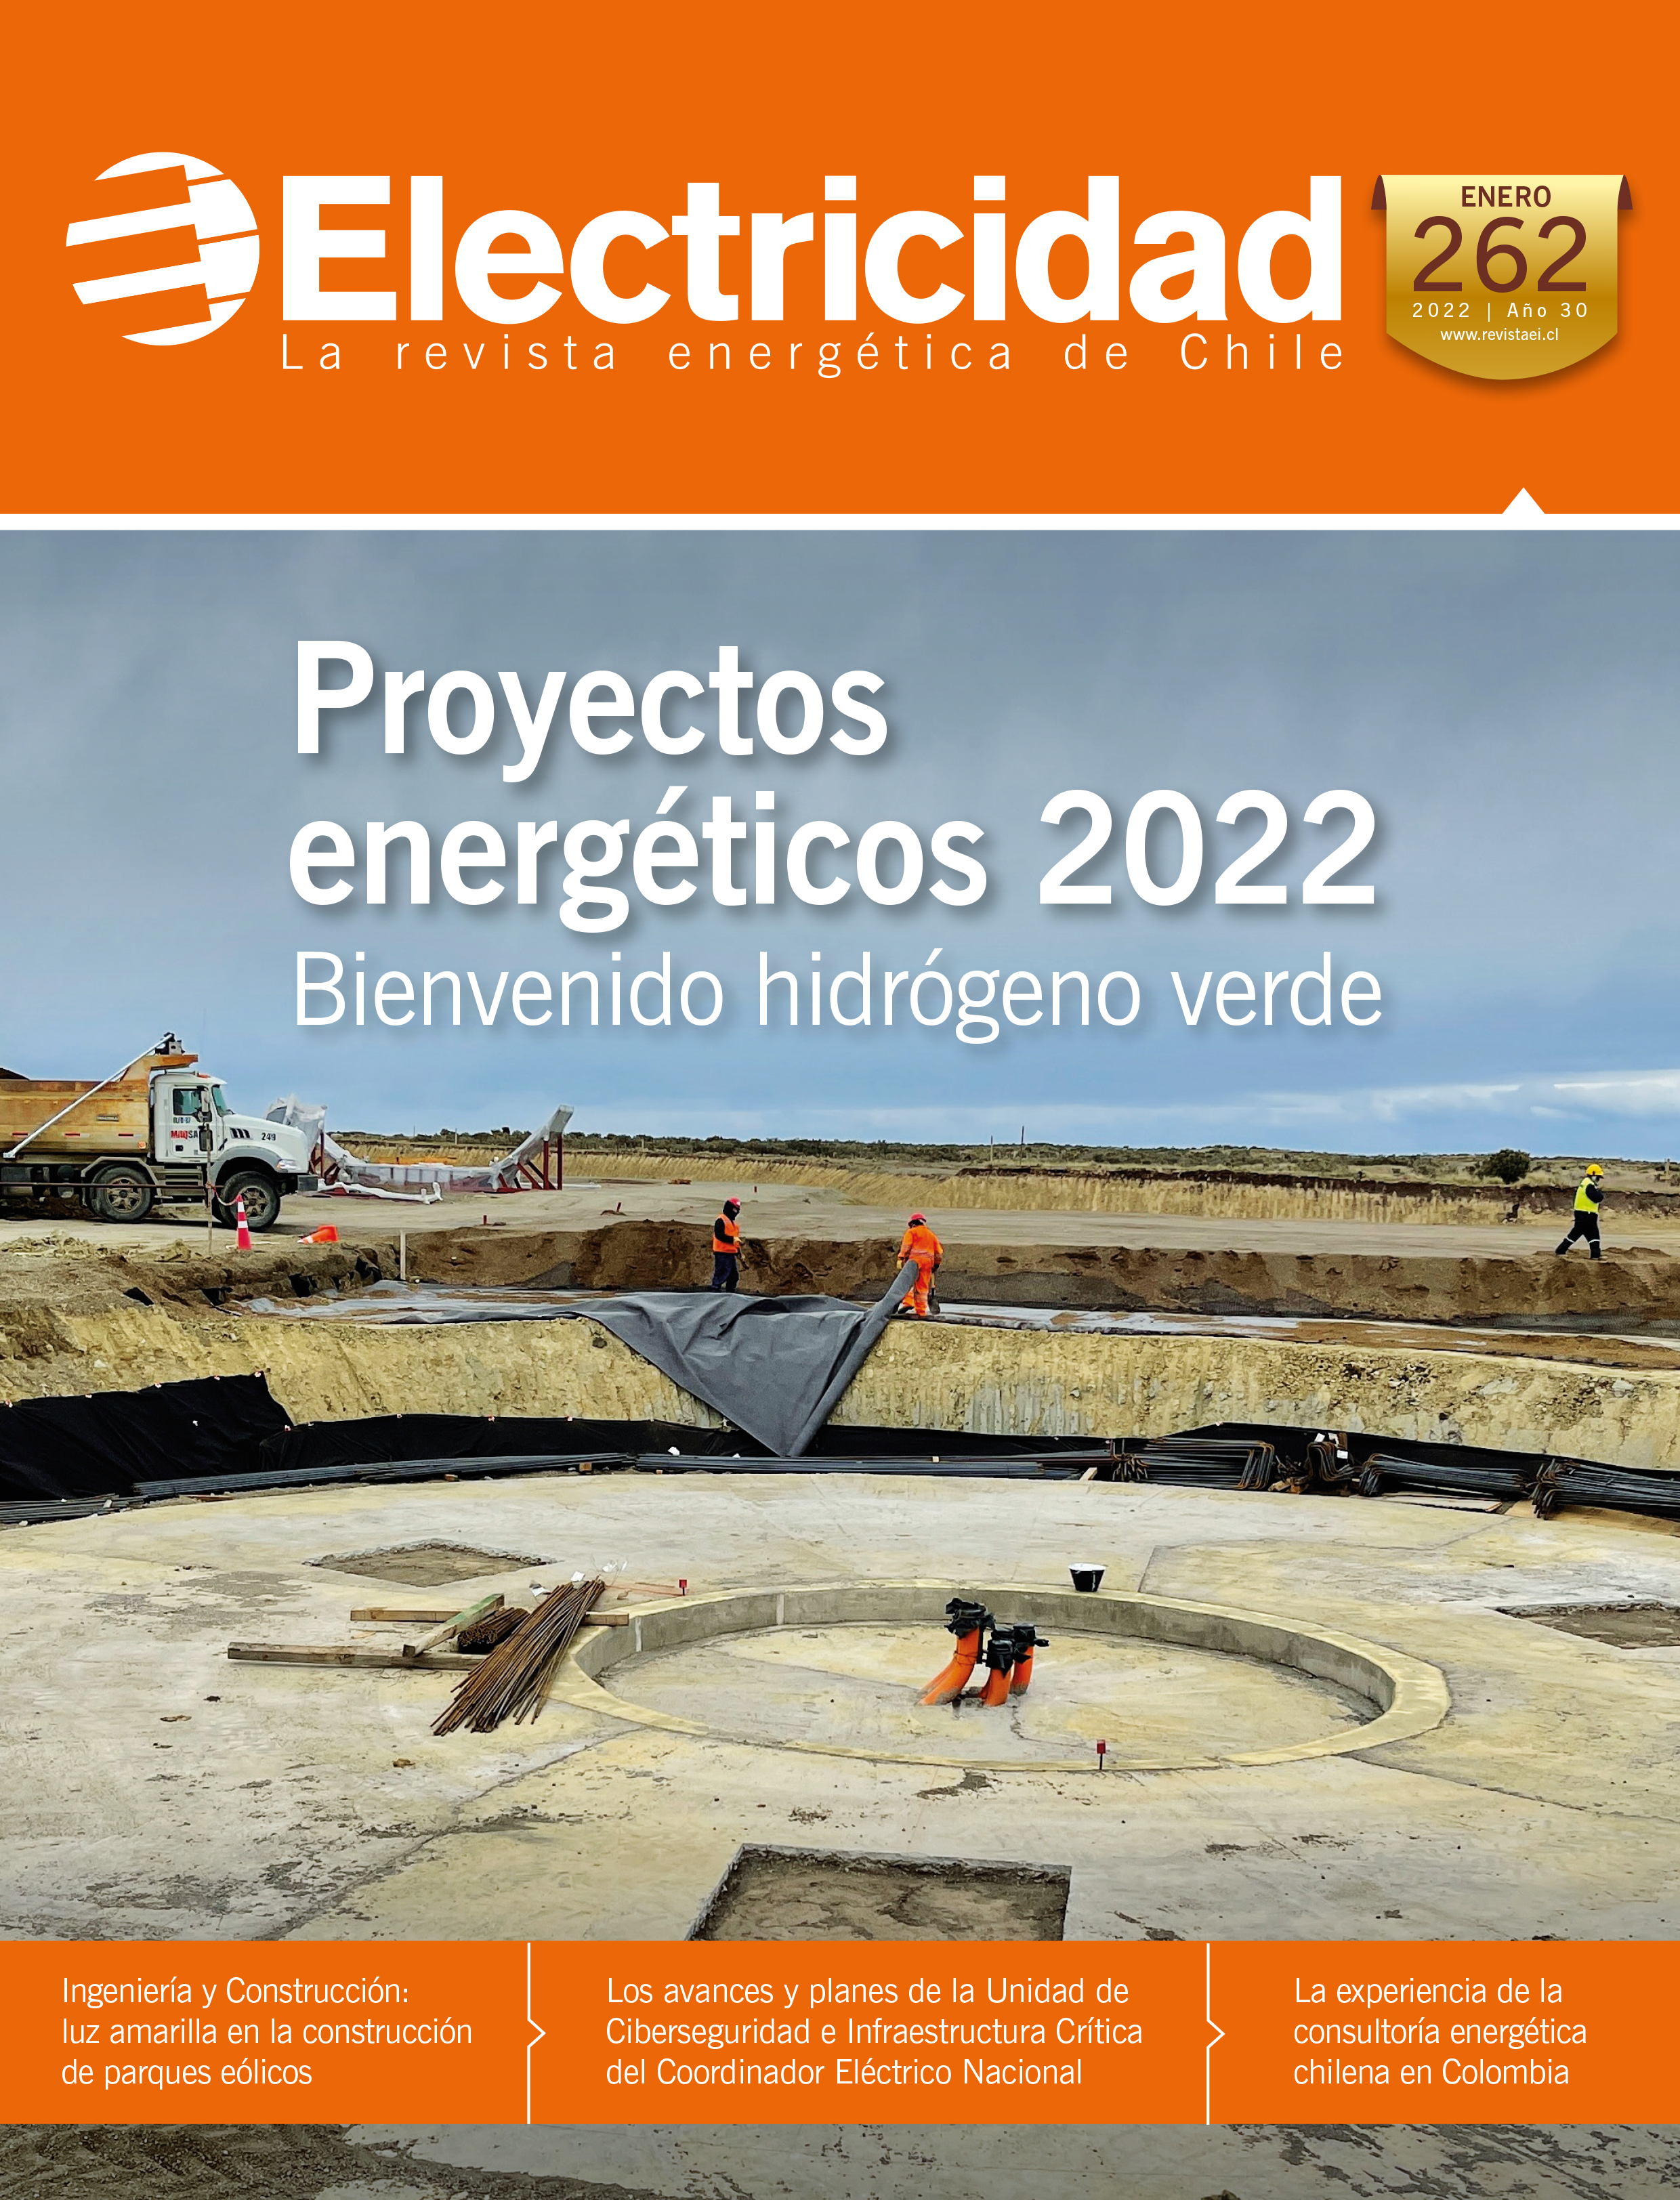 Proyectos energéticos 2022 Bienvenido hidrógeno verde